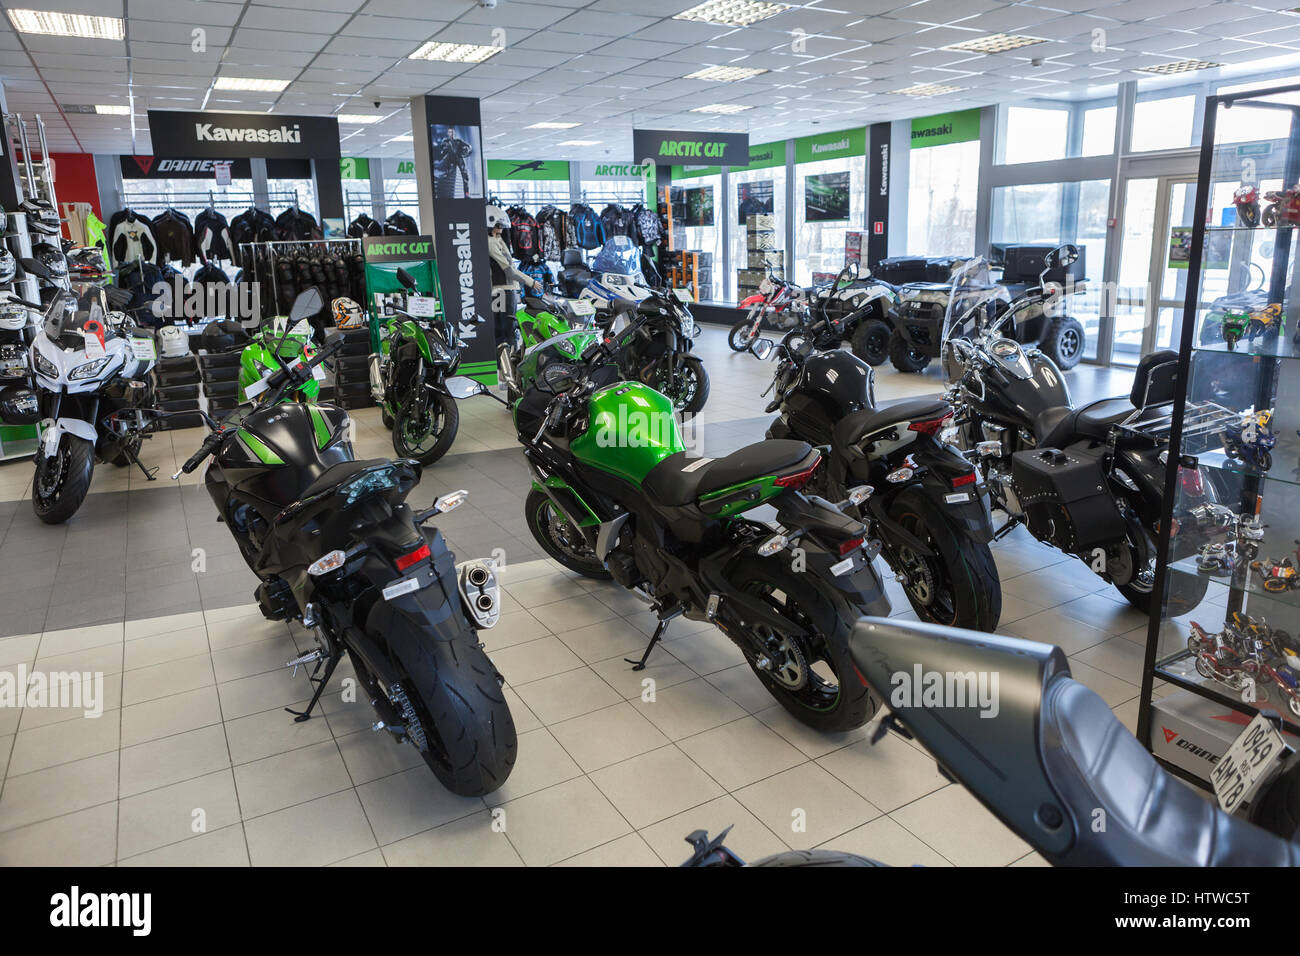 ST. Petersburgo, Rusia - FEB, circa 2017: Calle Nueva marca de motocicletas  de Kawasaki se encuentran a la venta en la tienda de motocicleta.  Concesionario Oficial de Kawasaki y Fotografía de stock - Alamy